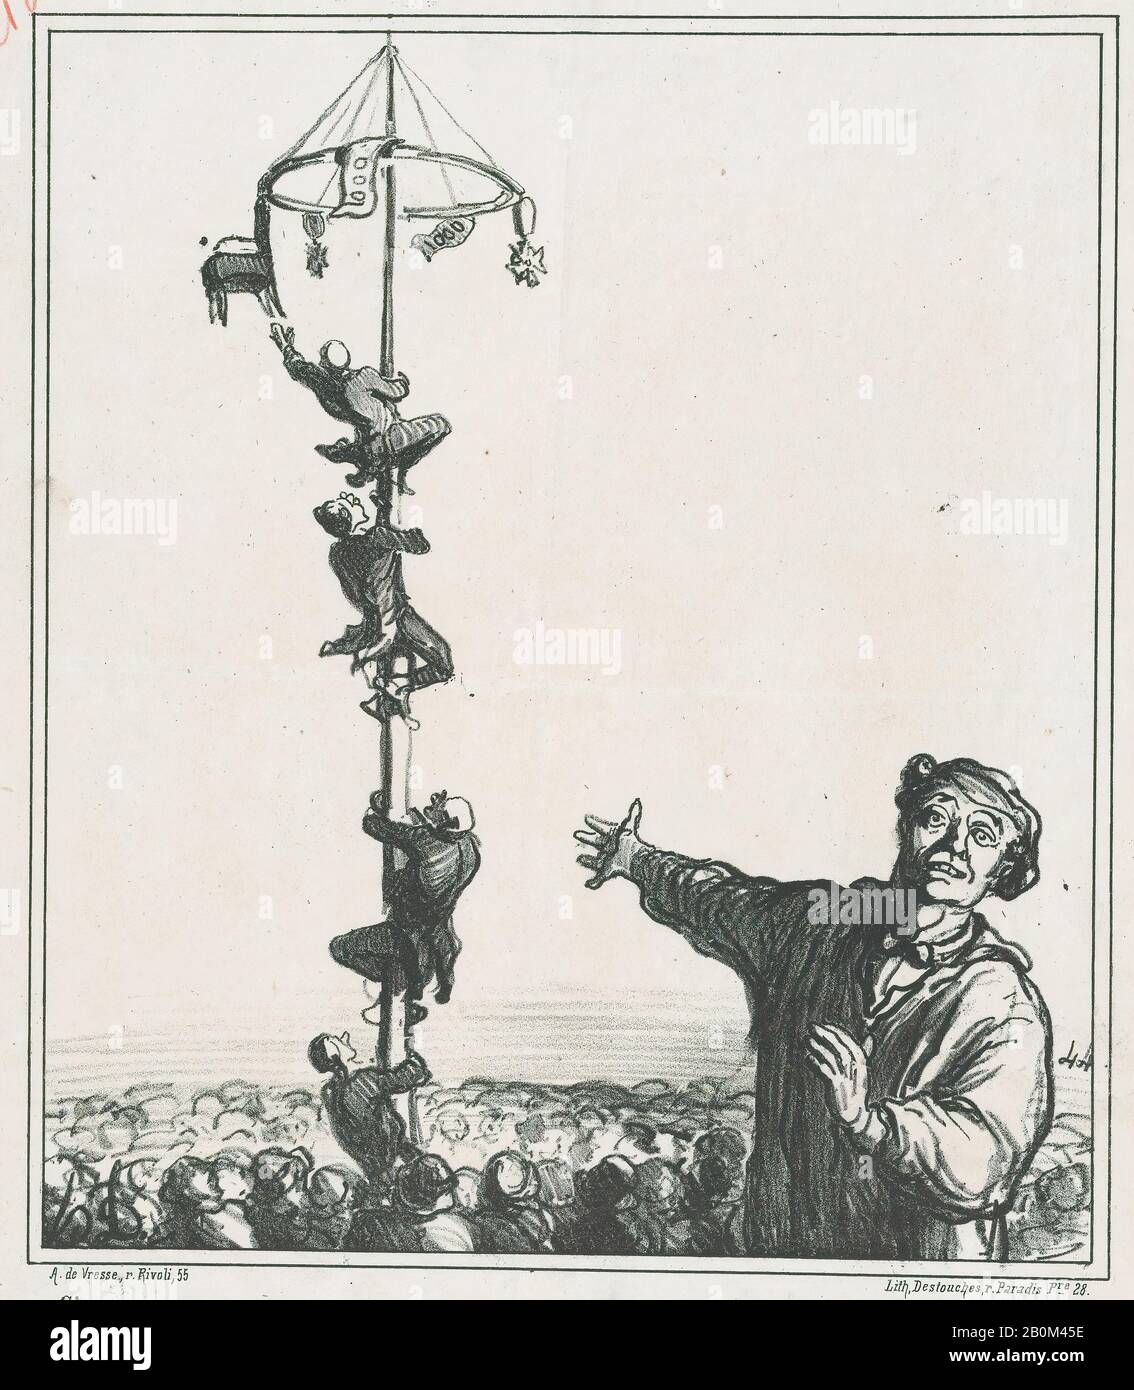 Honoré Daumier, questo è solo un modo per sforzare la schiena, da 'News of the day', pubblicato in le Charivari, 28 agosto 1868, 'News of the day' (Actualités), Honoré Daumier (francese, Marsiglia 1808–1879 Valmondois), 28 agosto 1868, Litograph, penna e inchiostro marrone, rosso, grafite su carta da giornale; Secondo stato di due, prova (Delteil), immagine: 9 11/16 × 8 1/4 in. (24,6 × 21 cm), foglio: 14 1/4 × 10 13/16 in. (36,2 × 27,4 cm), stampe Foto Stock